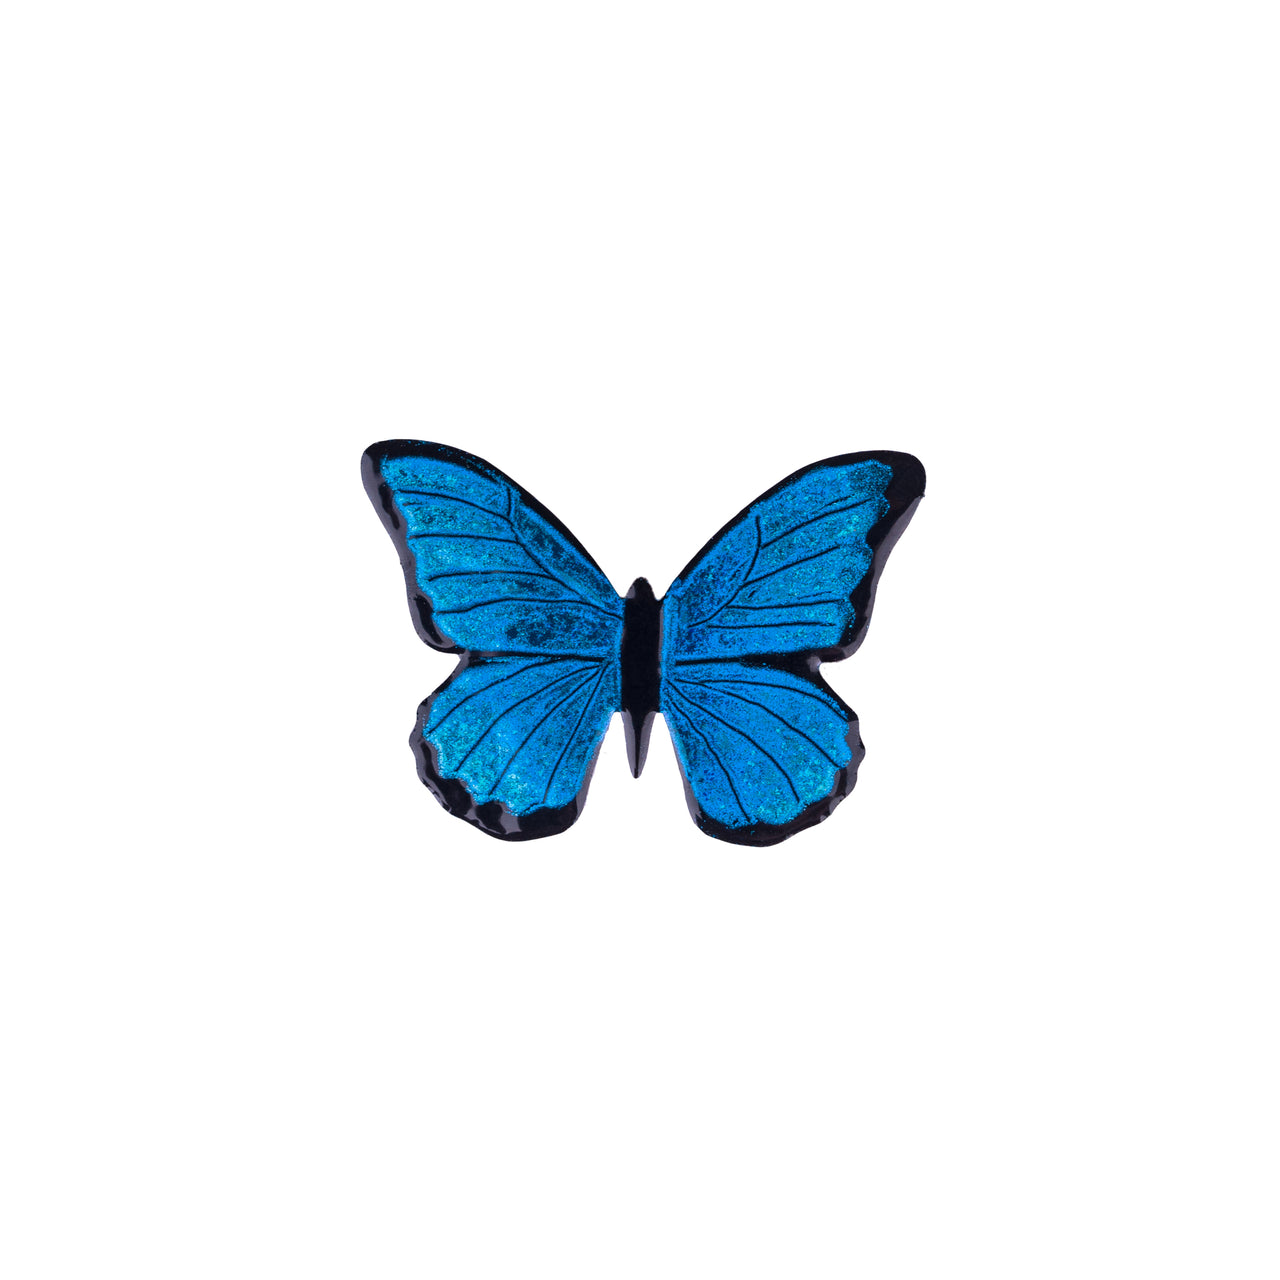 Blue Butterfly Brooch